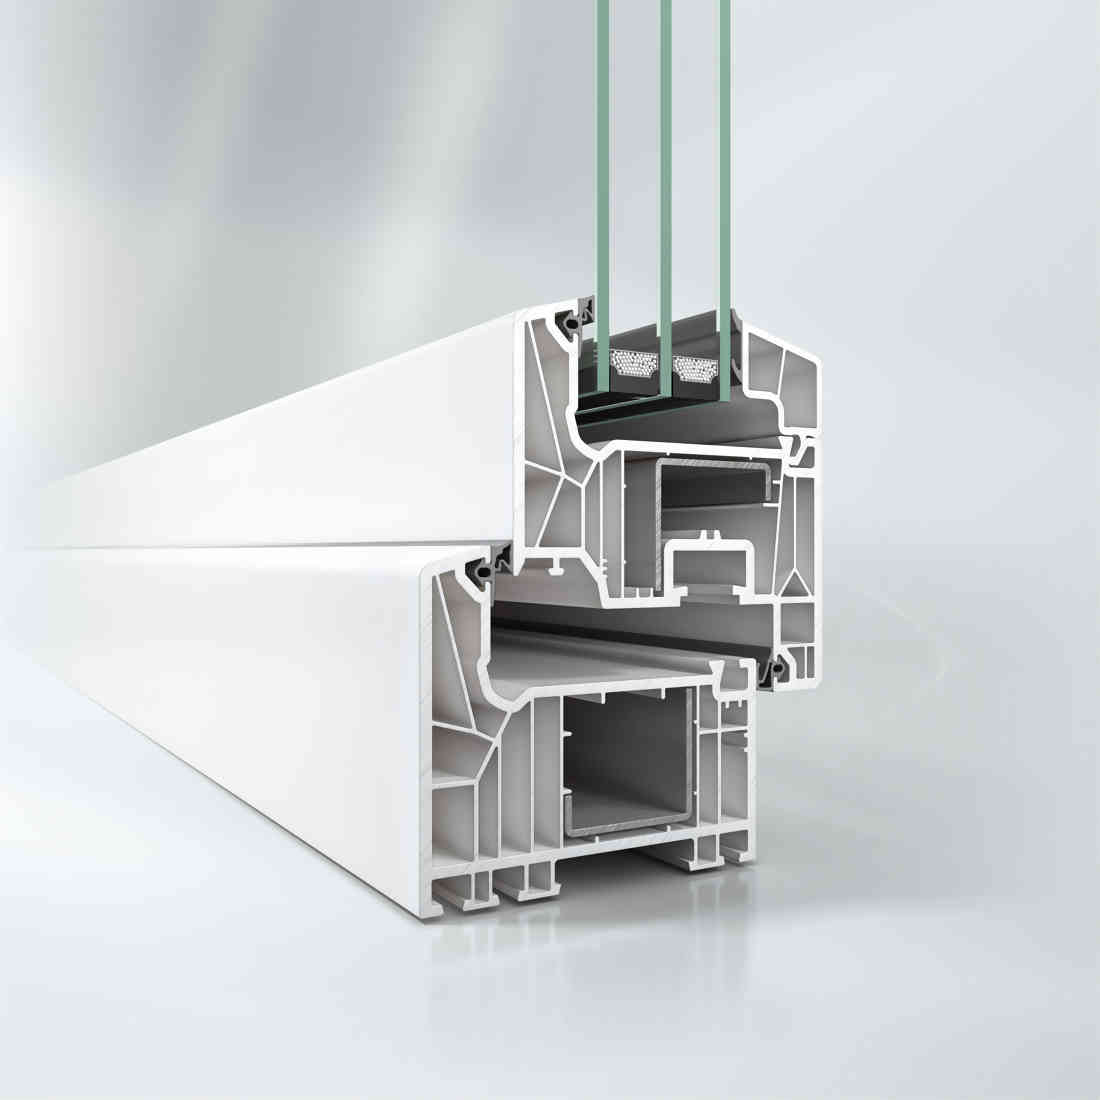 Sistem de profile PVC Schüco LivIng cu izolare termica la nivel de casa pasiva